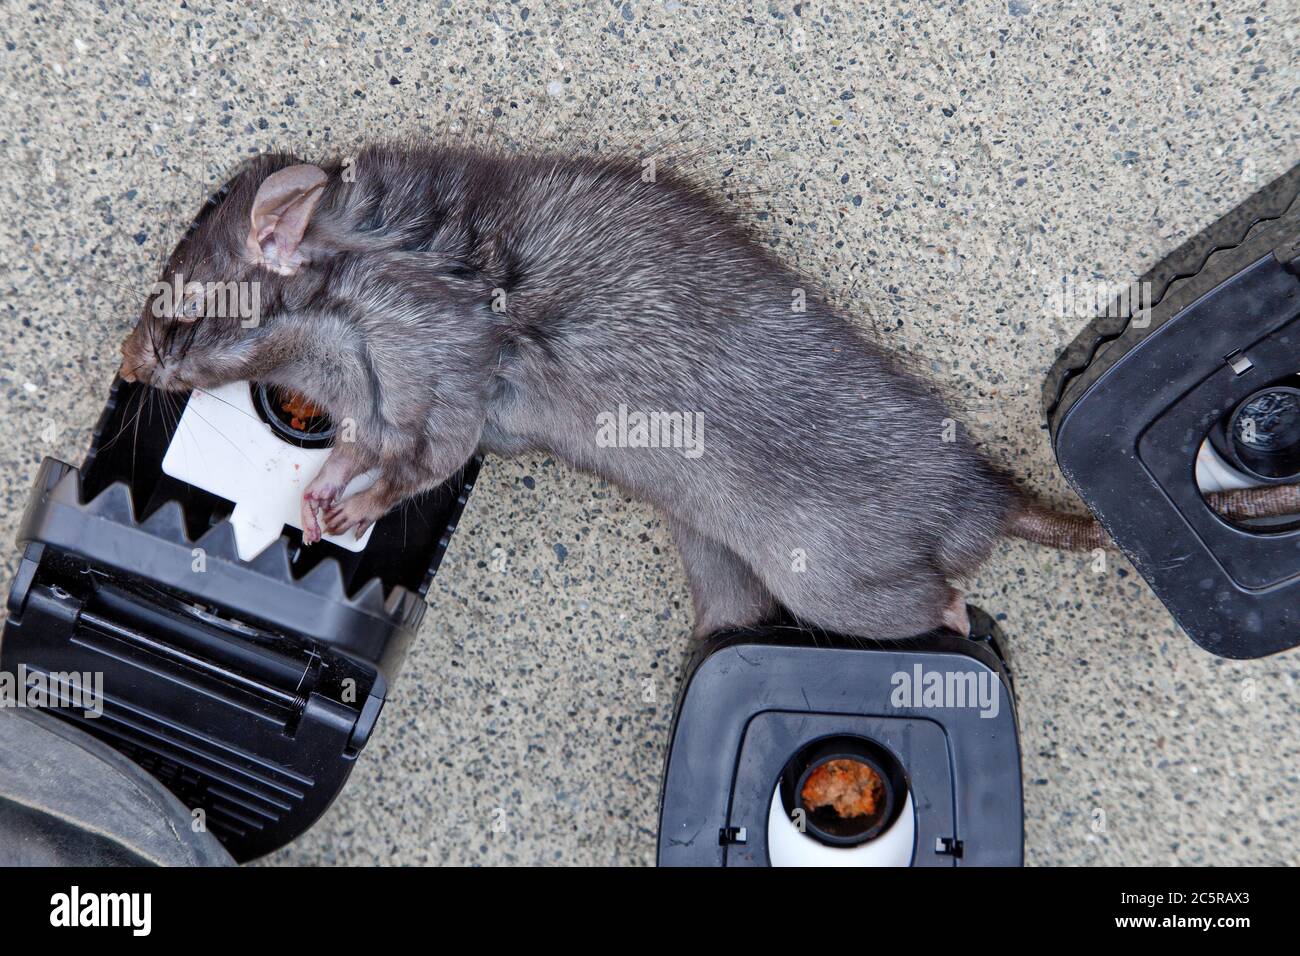 Rat mature 'Rattus hotus', également appelé rat de toit ou de navire, attrapé, piège ouvert. Côte de Californie. Banque D'Images